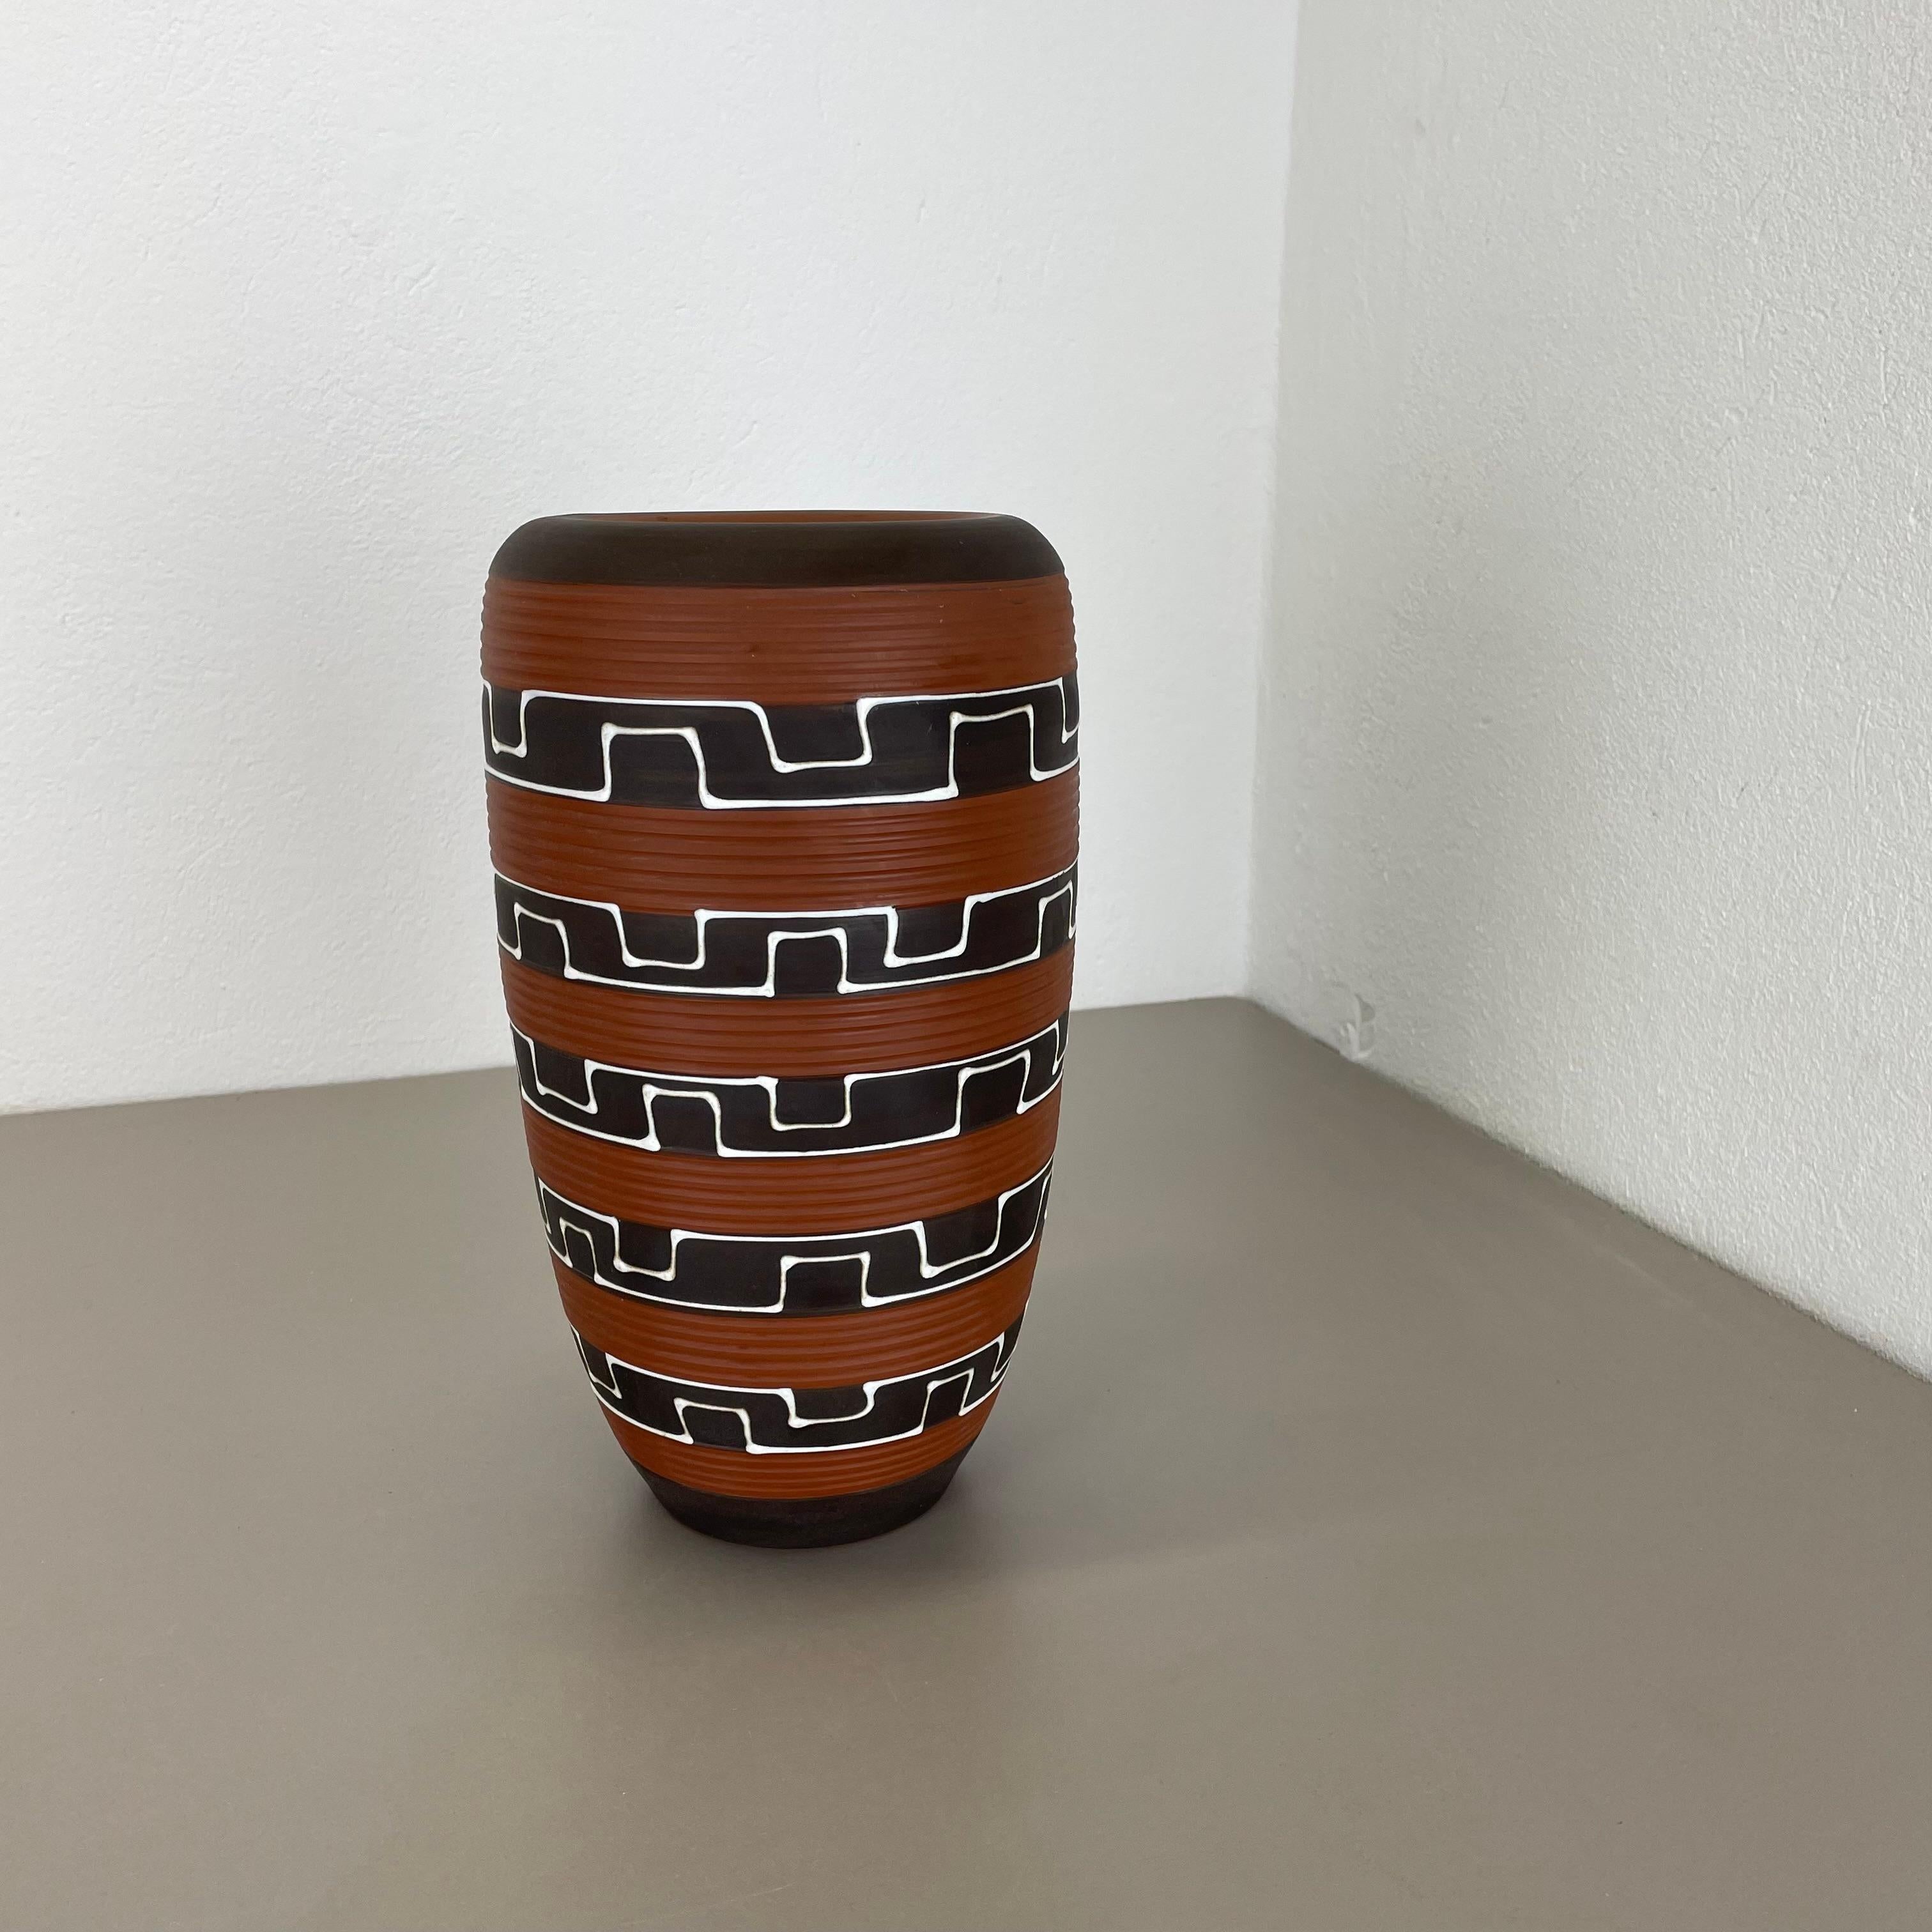 Article :

Vase en céramique 


Producteur :

ILKRA Ceramics, Allemagne


Décennie :

1950s





Vase original en céramique des années 1950, fabriqué en Allemagne. Production allemande de haute qualité avec une belle glaçure de surface abstraite et